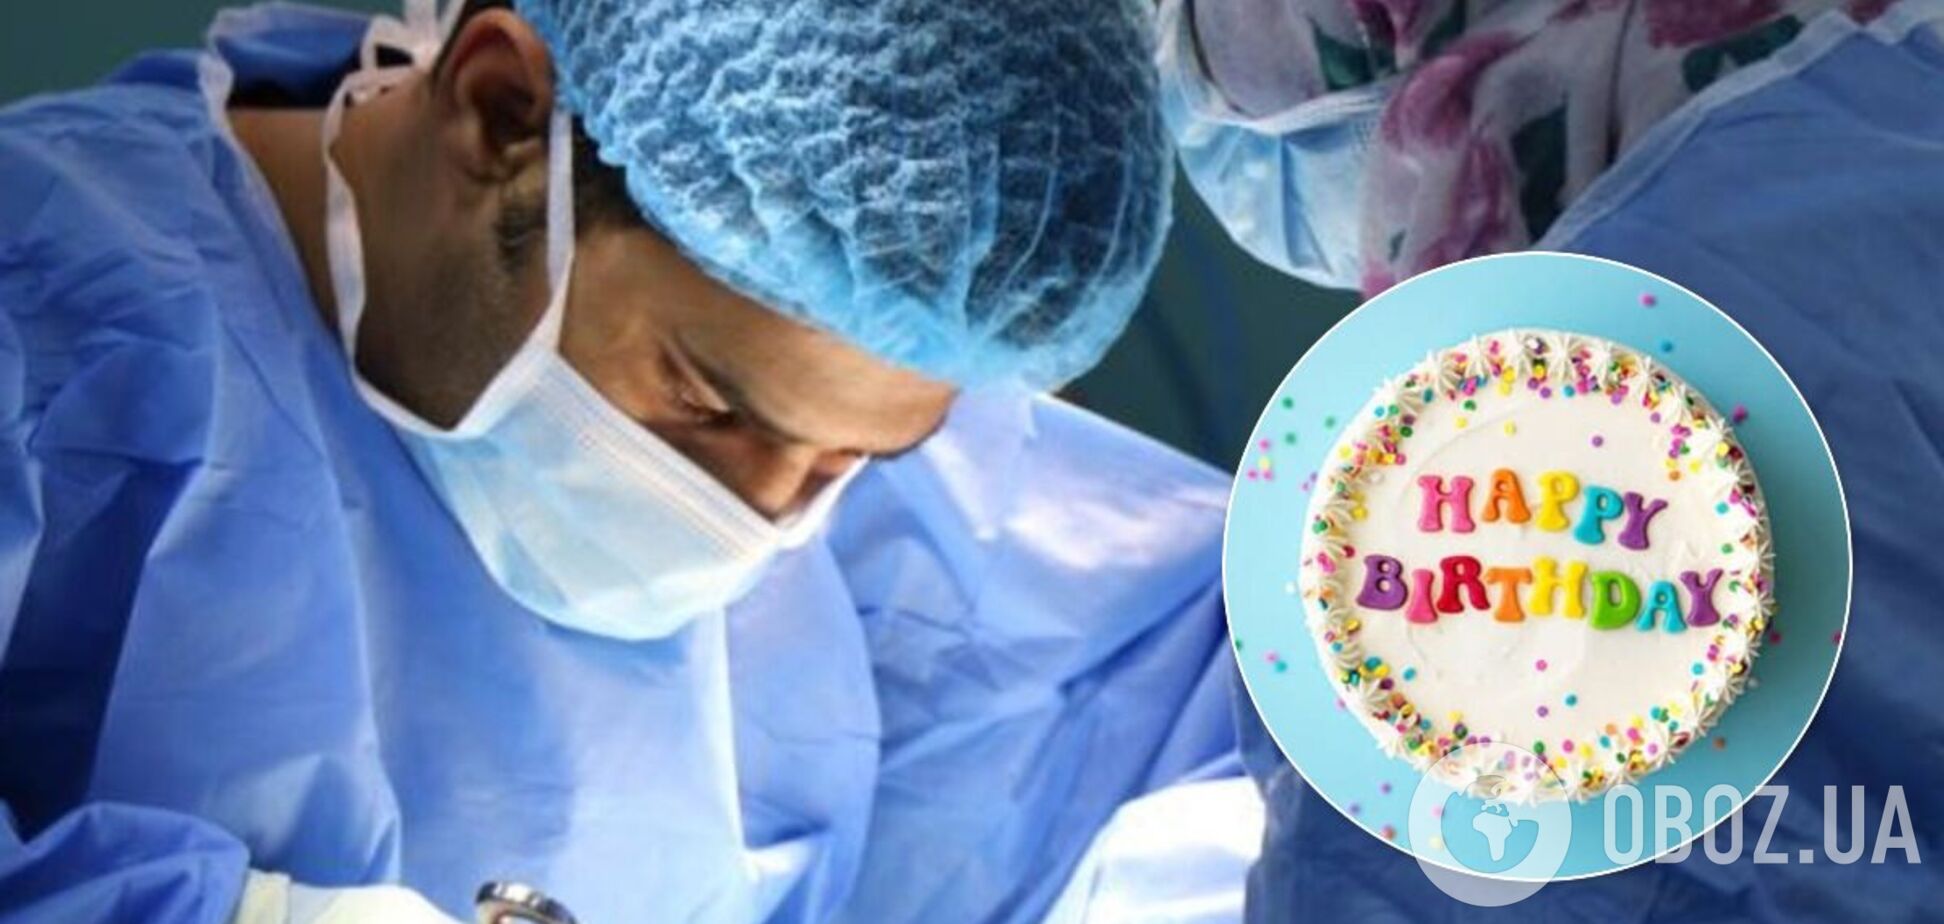 В день рождения хирурга лучше не оперироваться